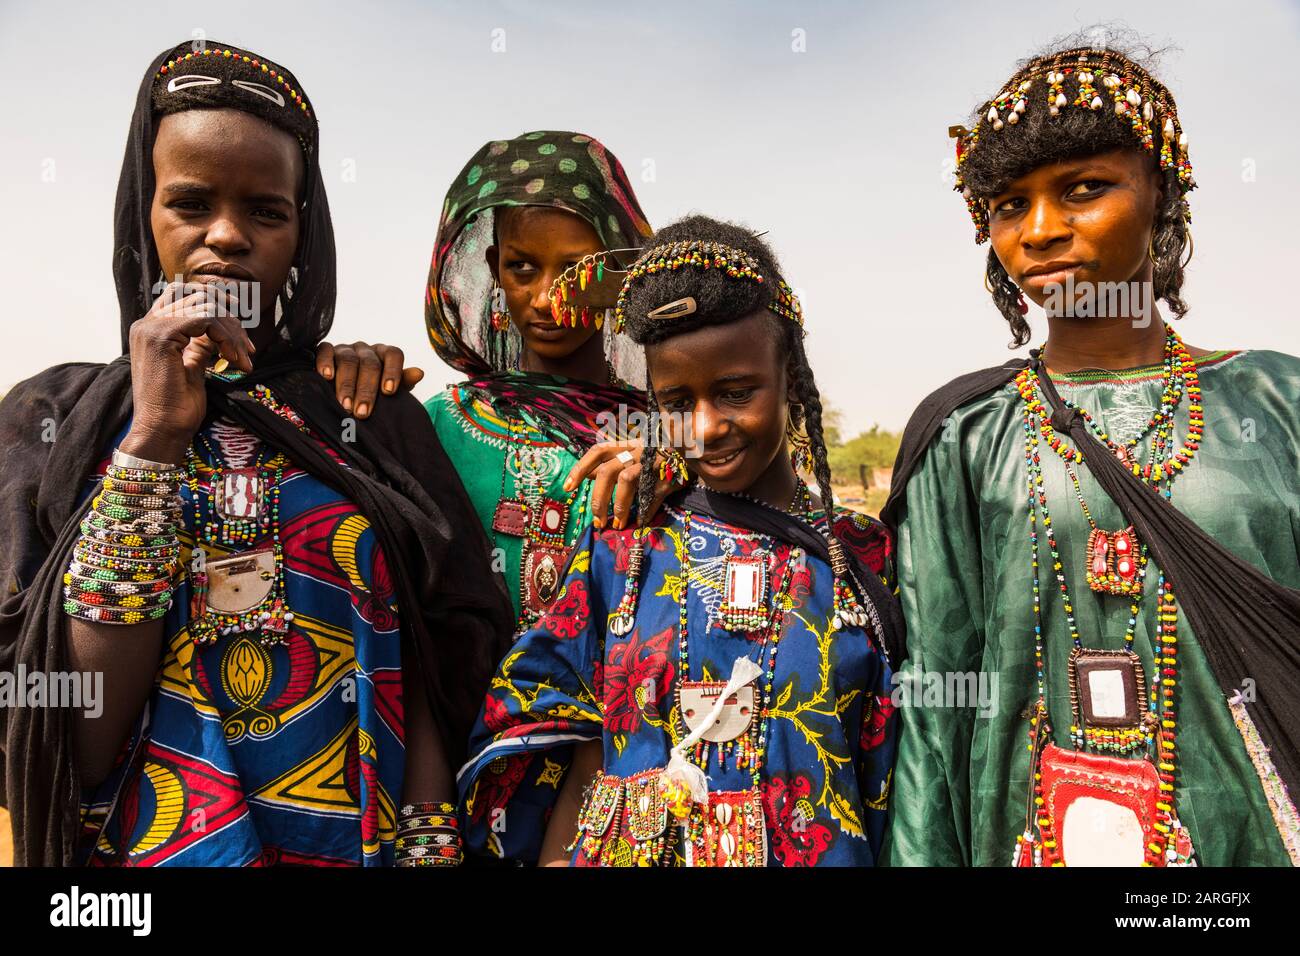 Ragazze giovani al festival Gerewol, concorso rituale di corteggiamento tra il popolo di Wodaabe Fula, Niger, Africa occidentale, Africa Foto Stock